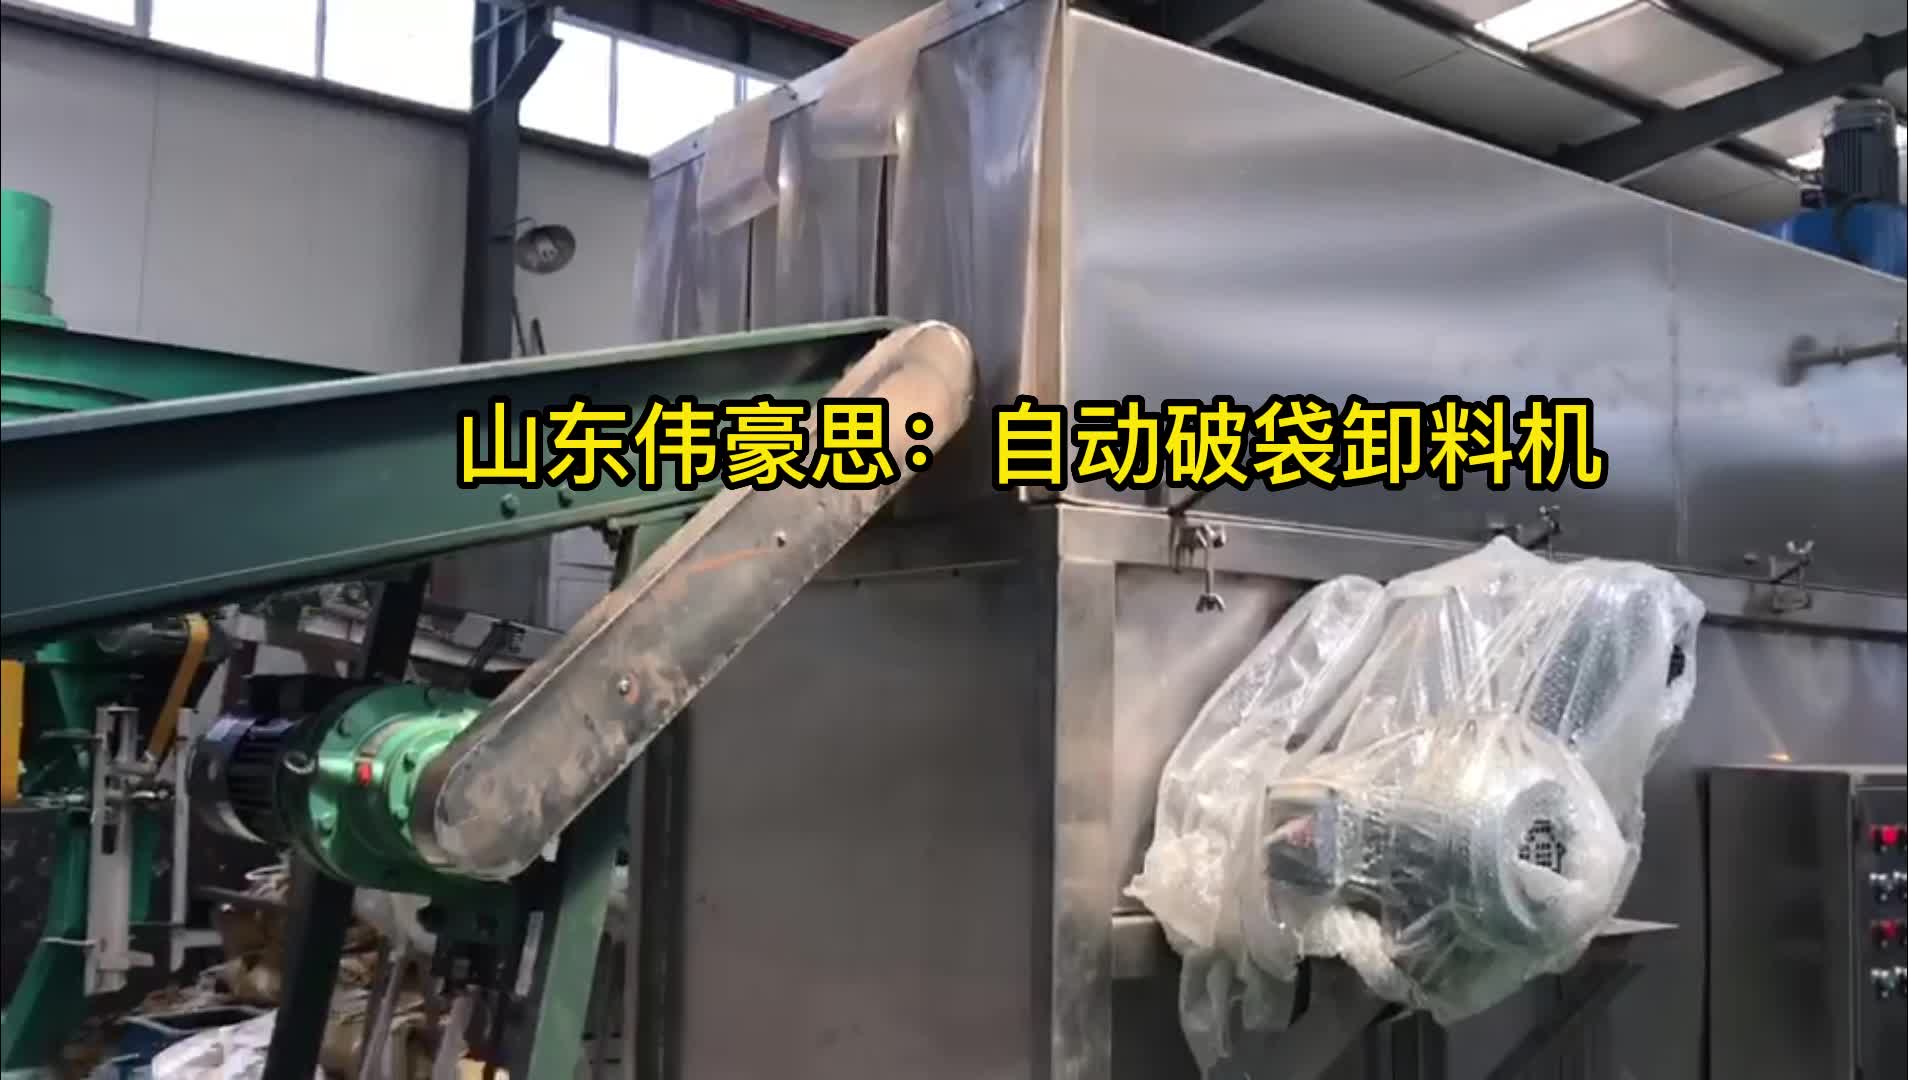 山东干污泥自动破袋机 自动拆袋卸料设备应用
